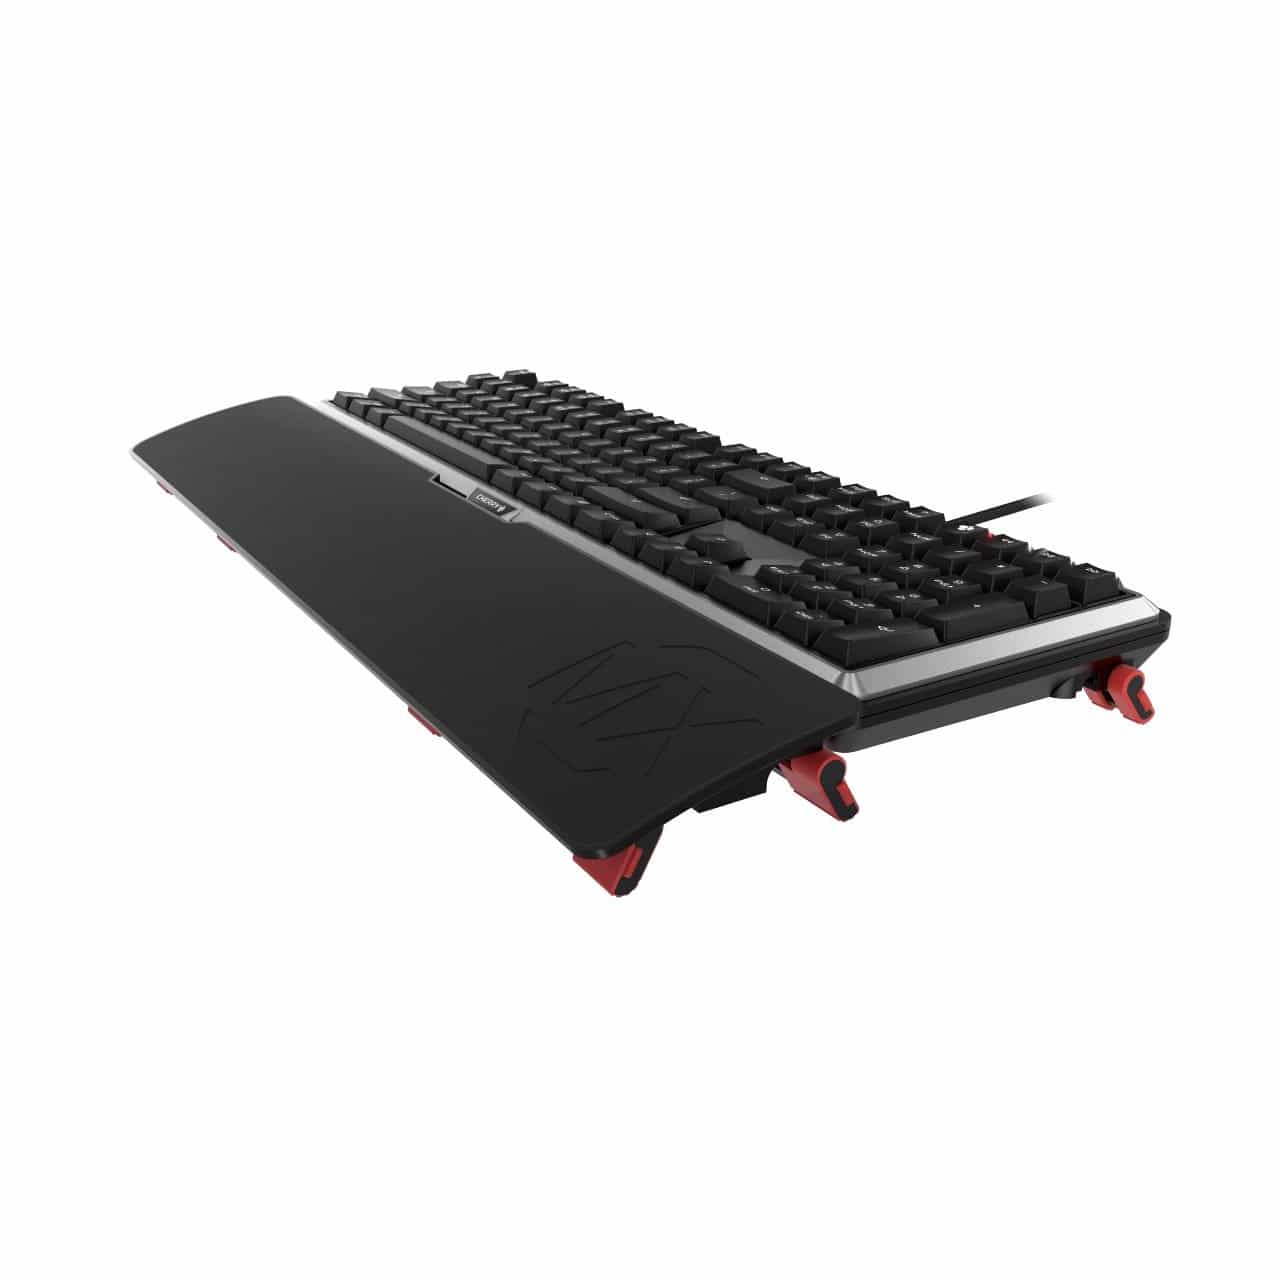 Image 7 : Cherry MX Board 5.0 : clavier mécanique silencieux et ergonomique pour gamers